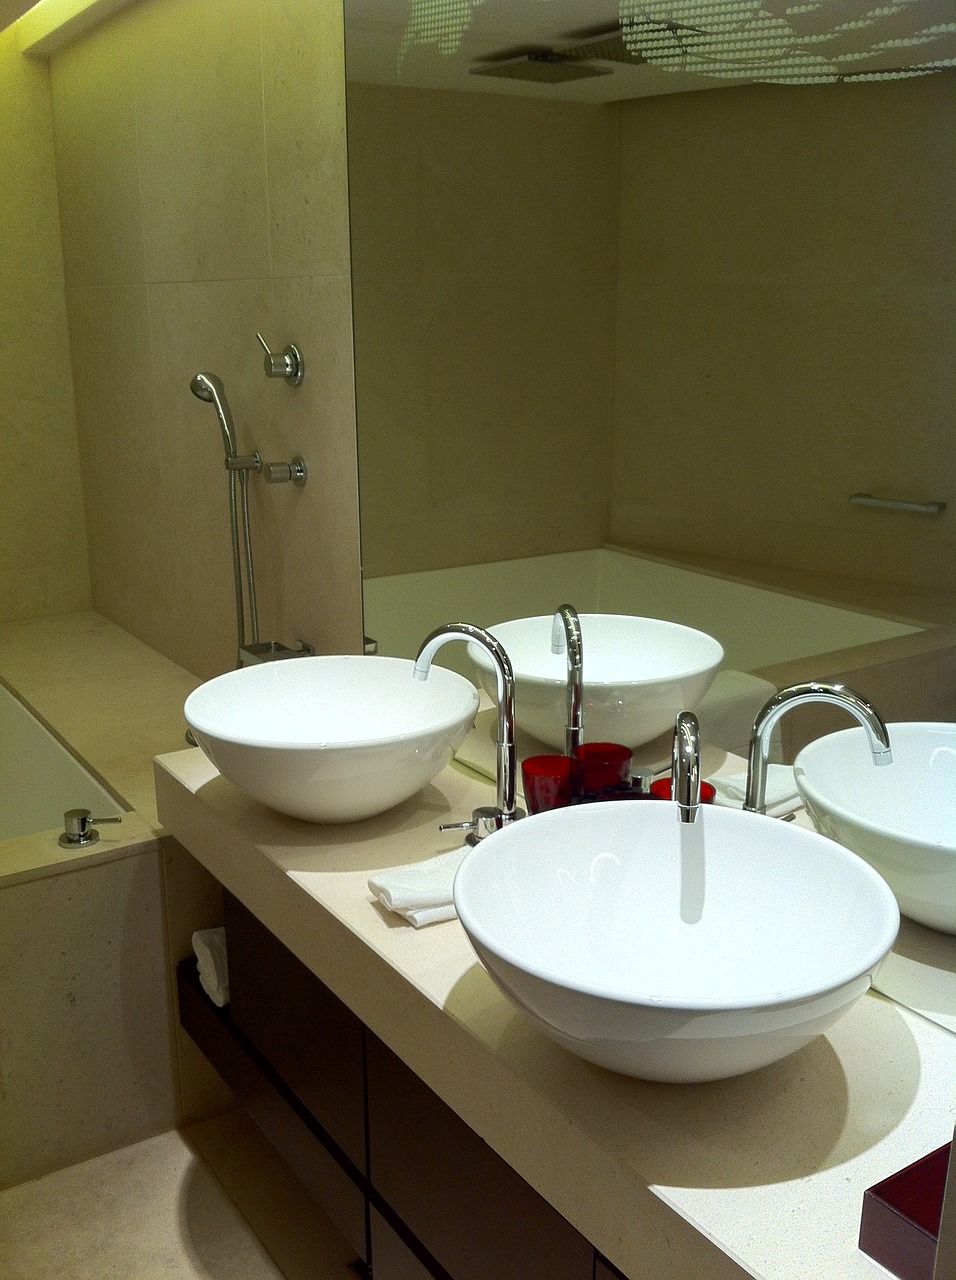 Sæbedispensere på badeværelset: En detaljeret gennemgang af et vigtigt tilbehør